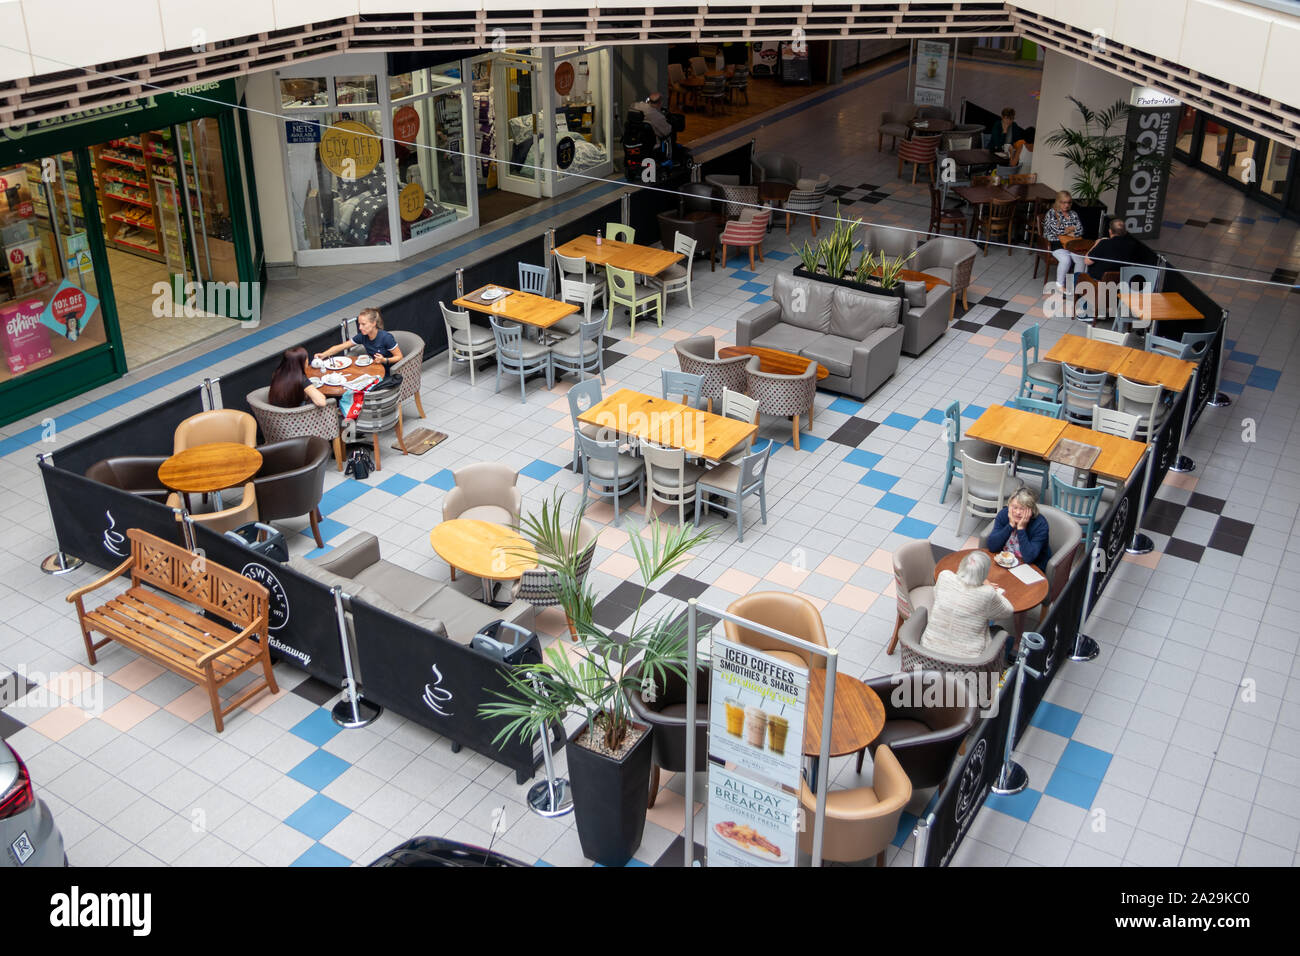 UK nach unten betrachten Menschen sassen an den Tischen essen und trinken zu einem Food Court in einem Einkaufszentrum oder im Einkaufszentrum Stockfoto